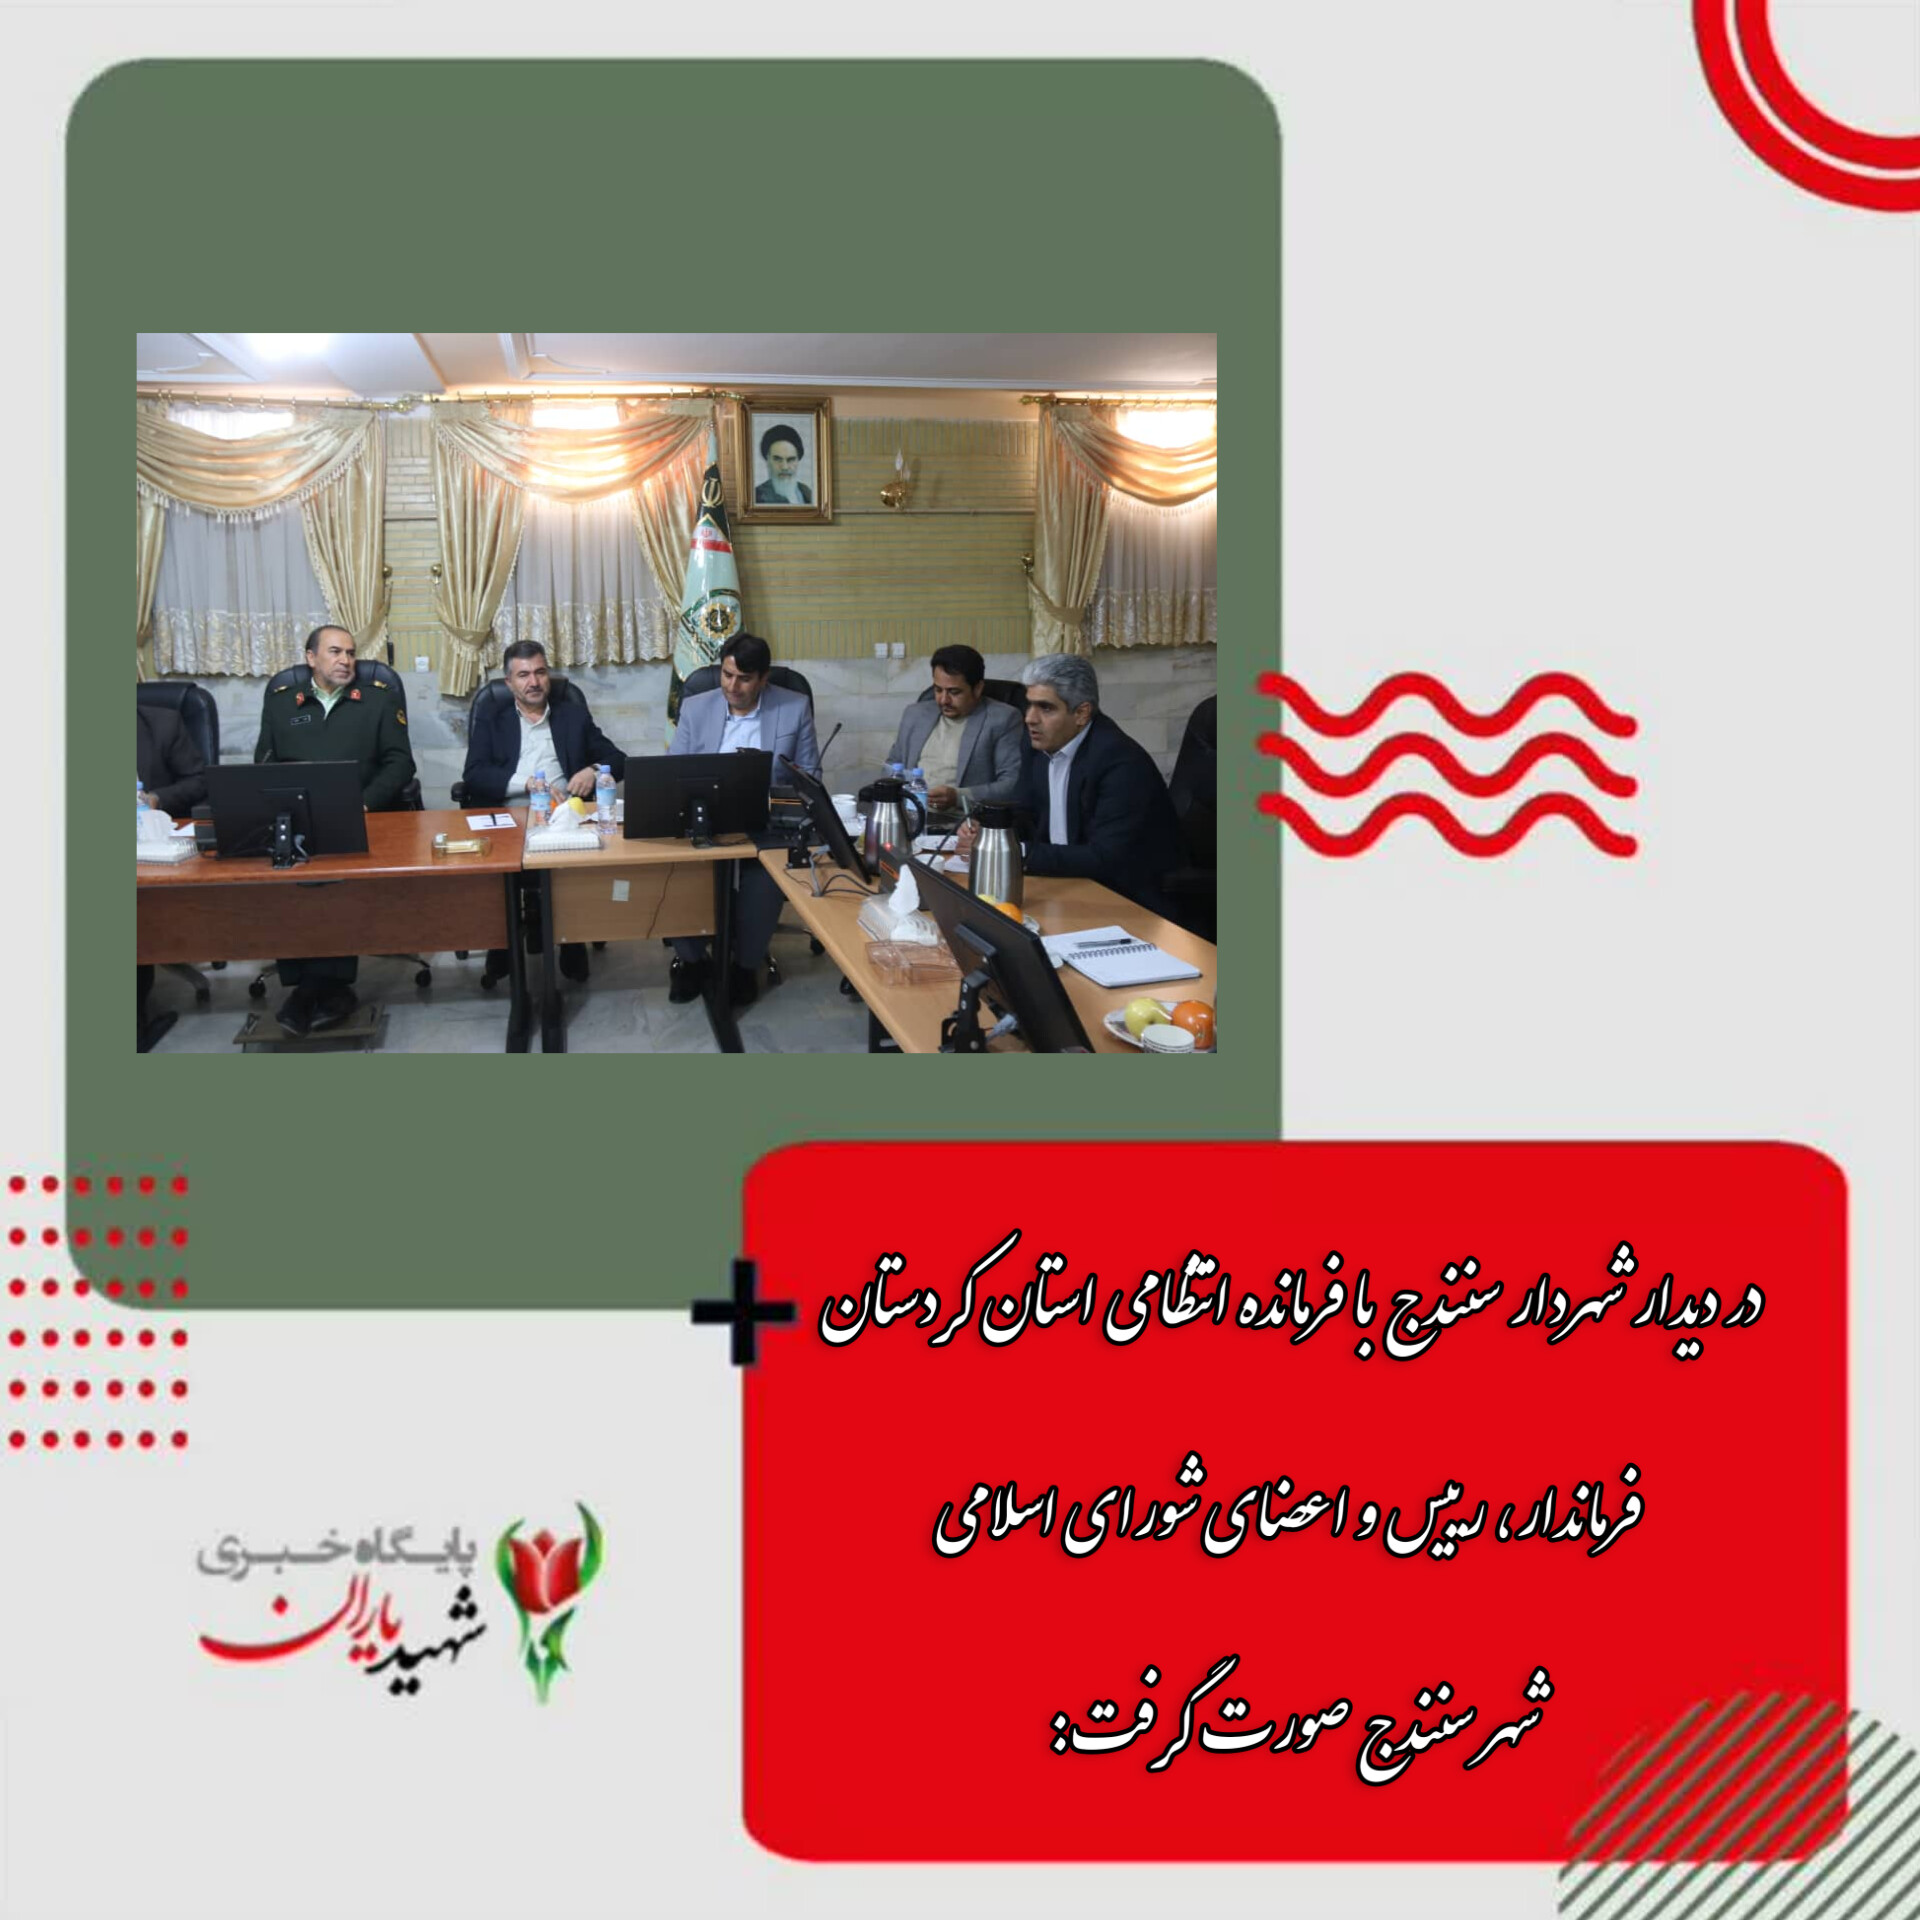 در دیدار شهردار سنندج با فرمانده انتظامی استان کردستان فرماندار، رییس و اعضای شورای اسلامی شهر سنندج صورت گرفت: